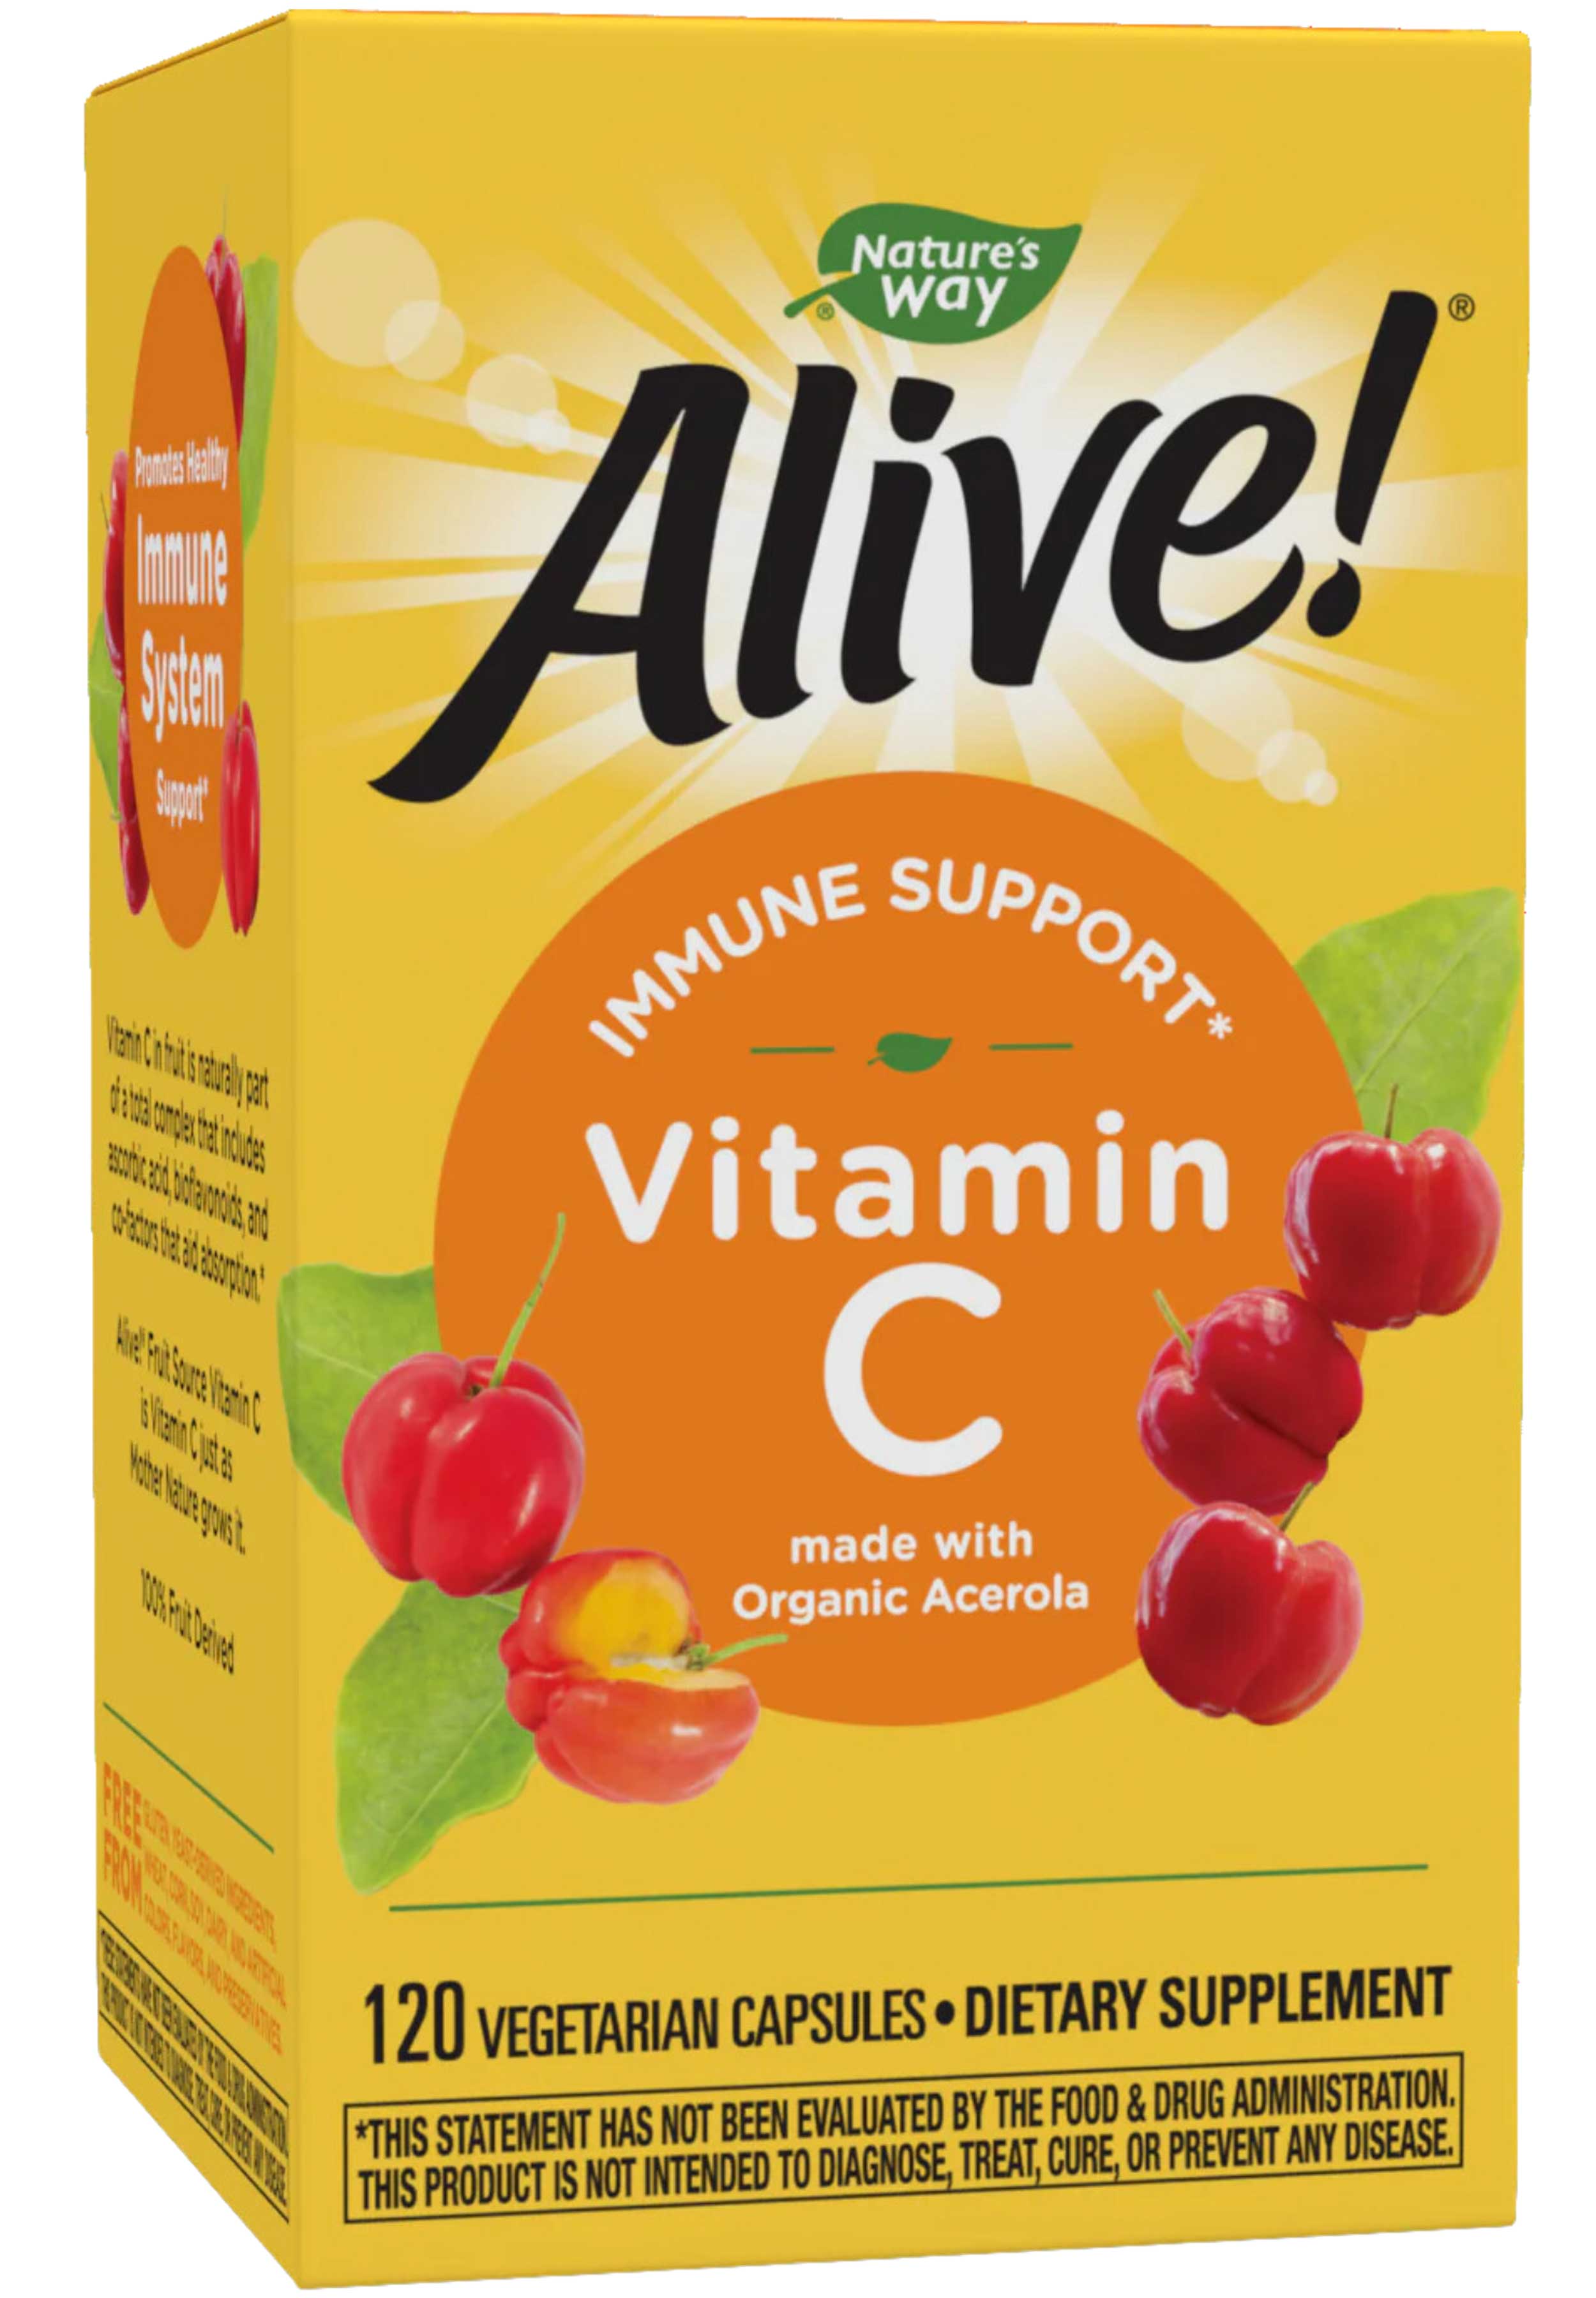 Nature's Way Alive! Vitamin C